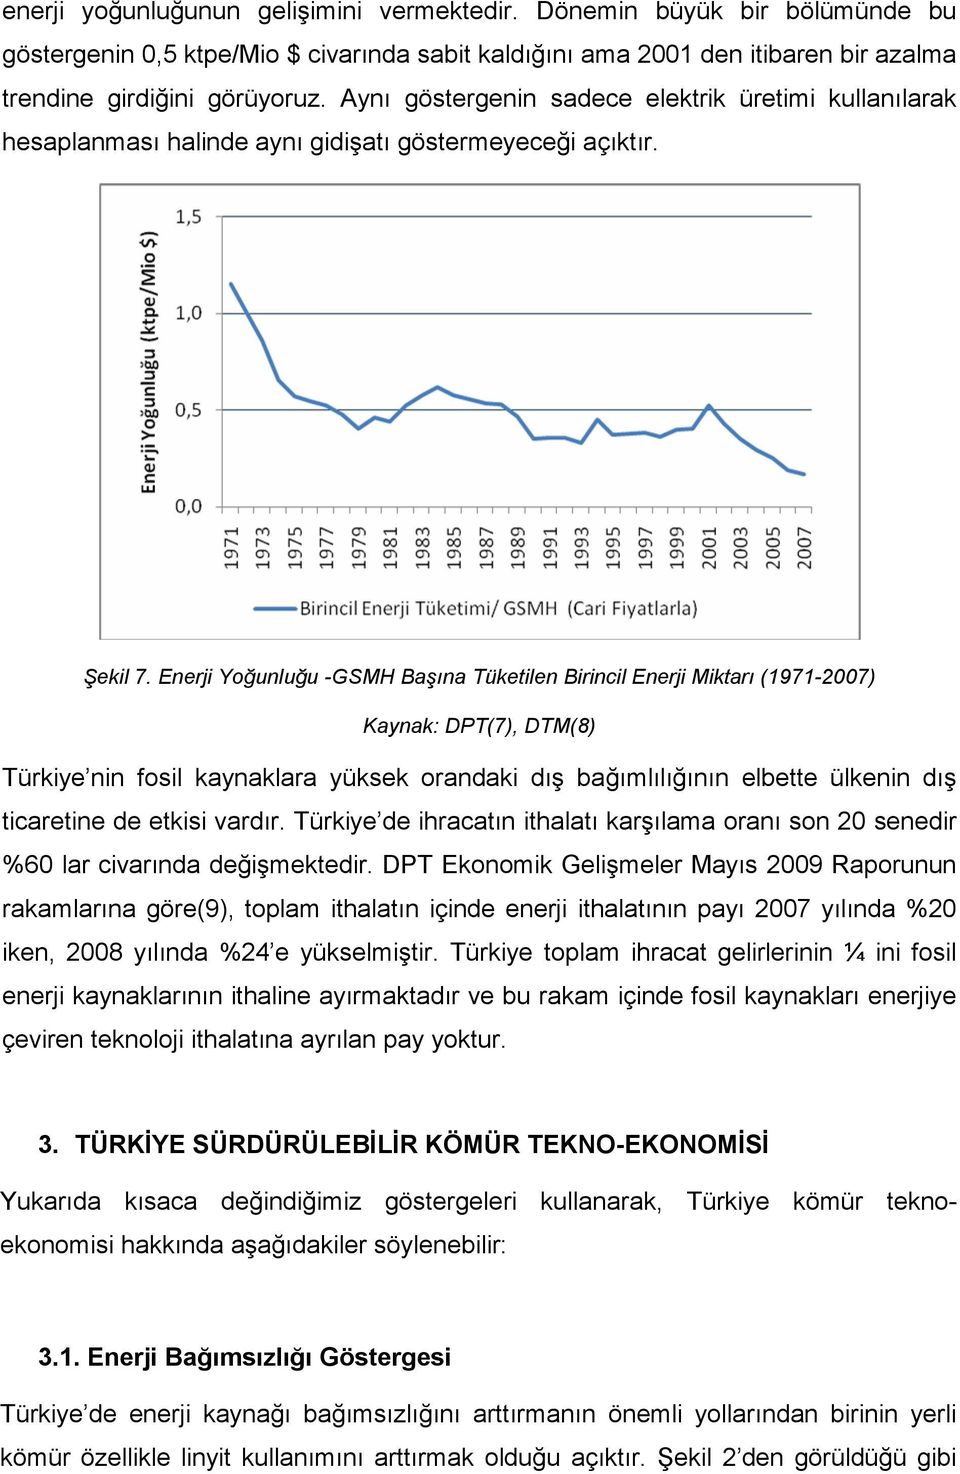 Enerji Yoğunluğu -GSMH Başına Tüketilen Birincil Enerji Miktarı (1971-2007) Kaynak: DPT(7), DTM(8) Türkiye nin fosil kaynaklara yüksek orandaki dış bağımlılığının elbette ülkenin dış ticaretine de